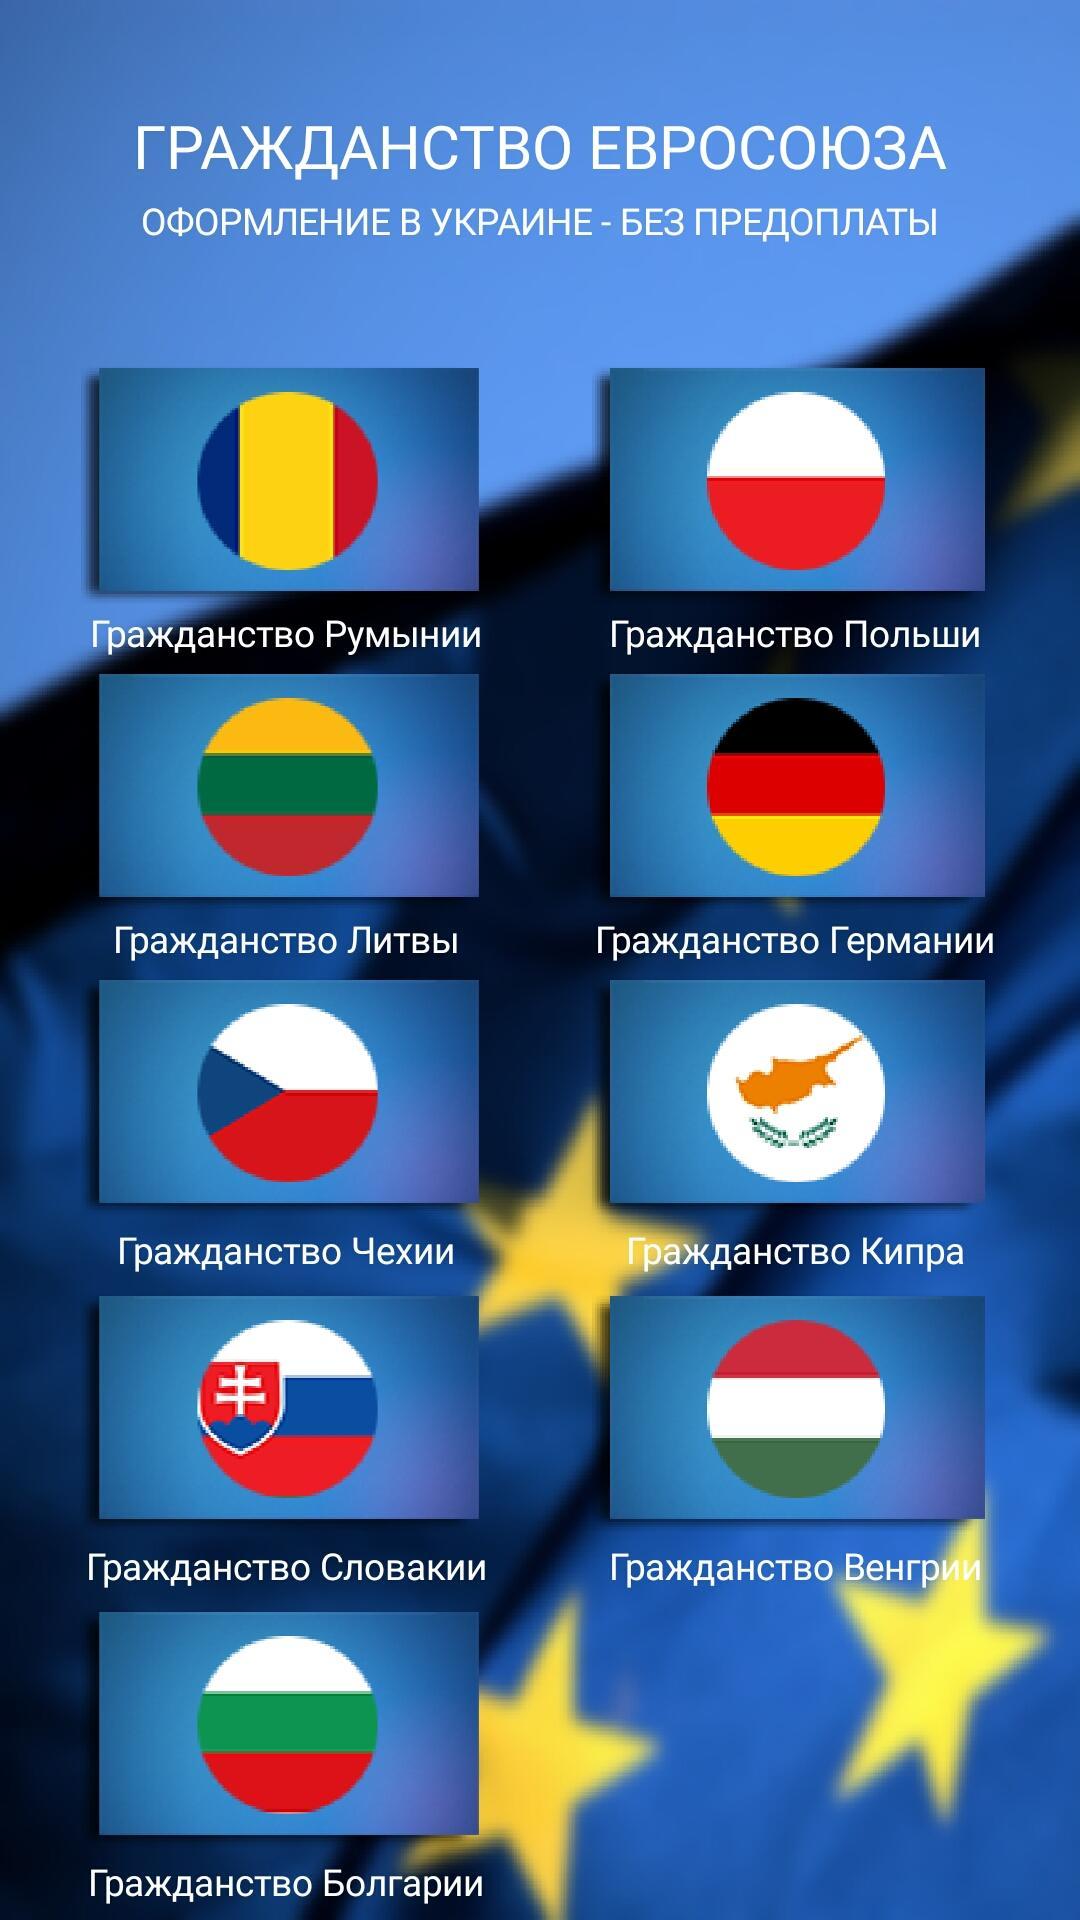 Упрощенные программы получения гражданства европейской страны